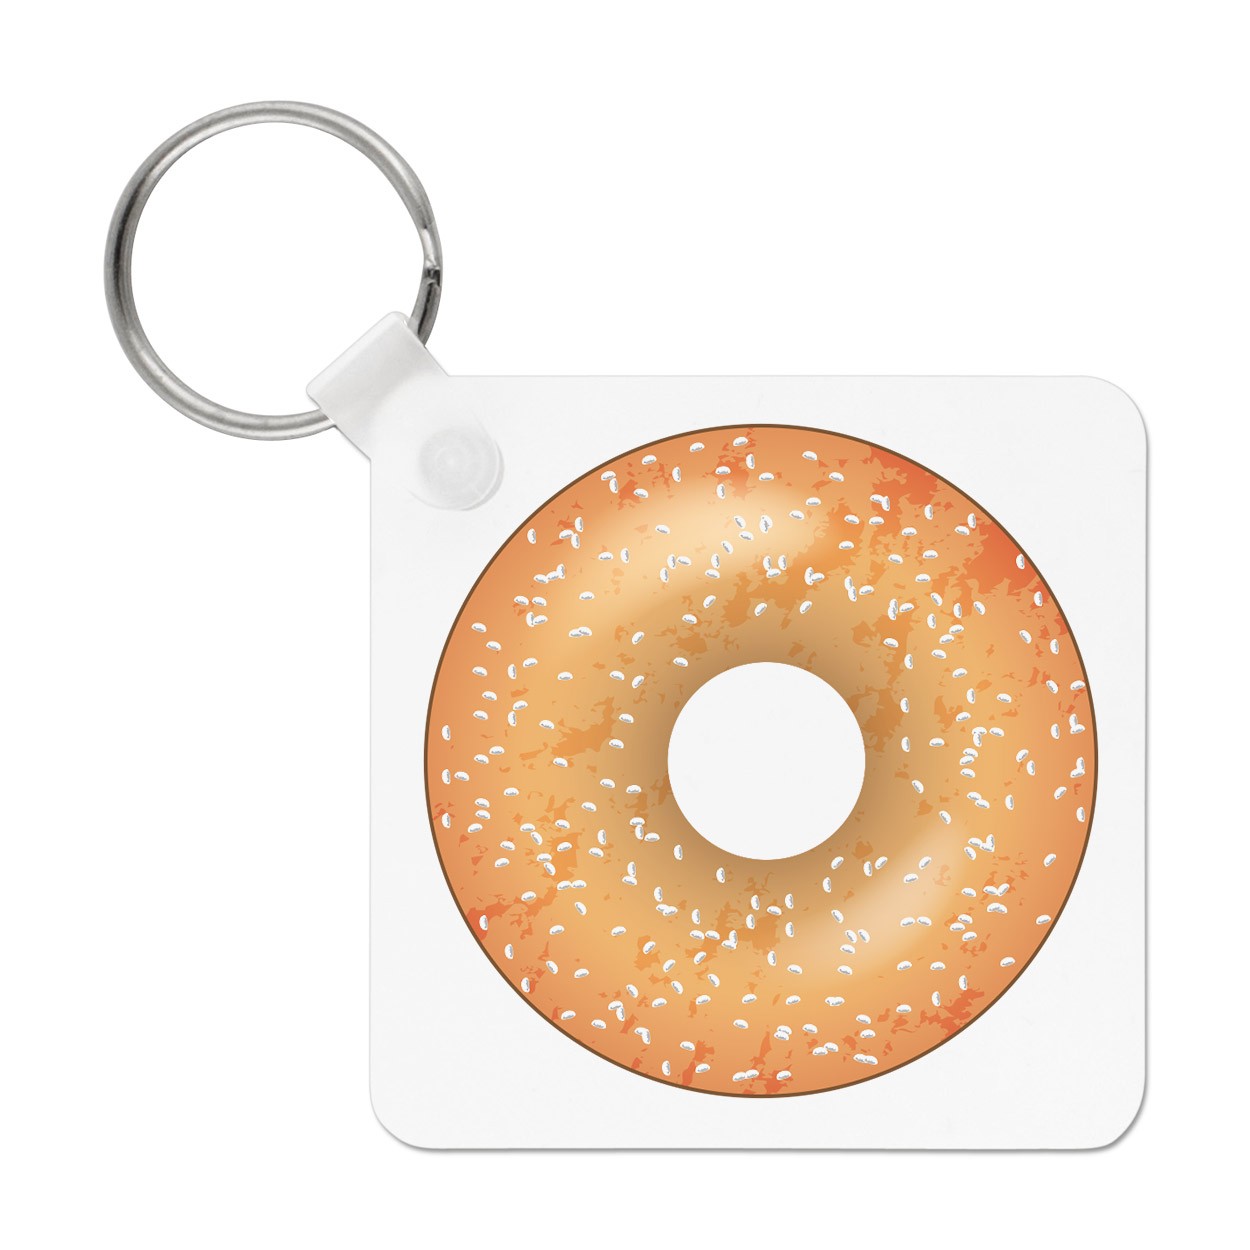 Sprinkled Glazed Doughnut Donut Keyring Key Chain